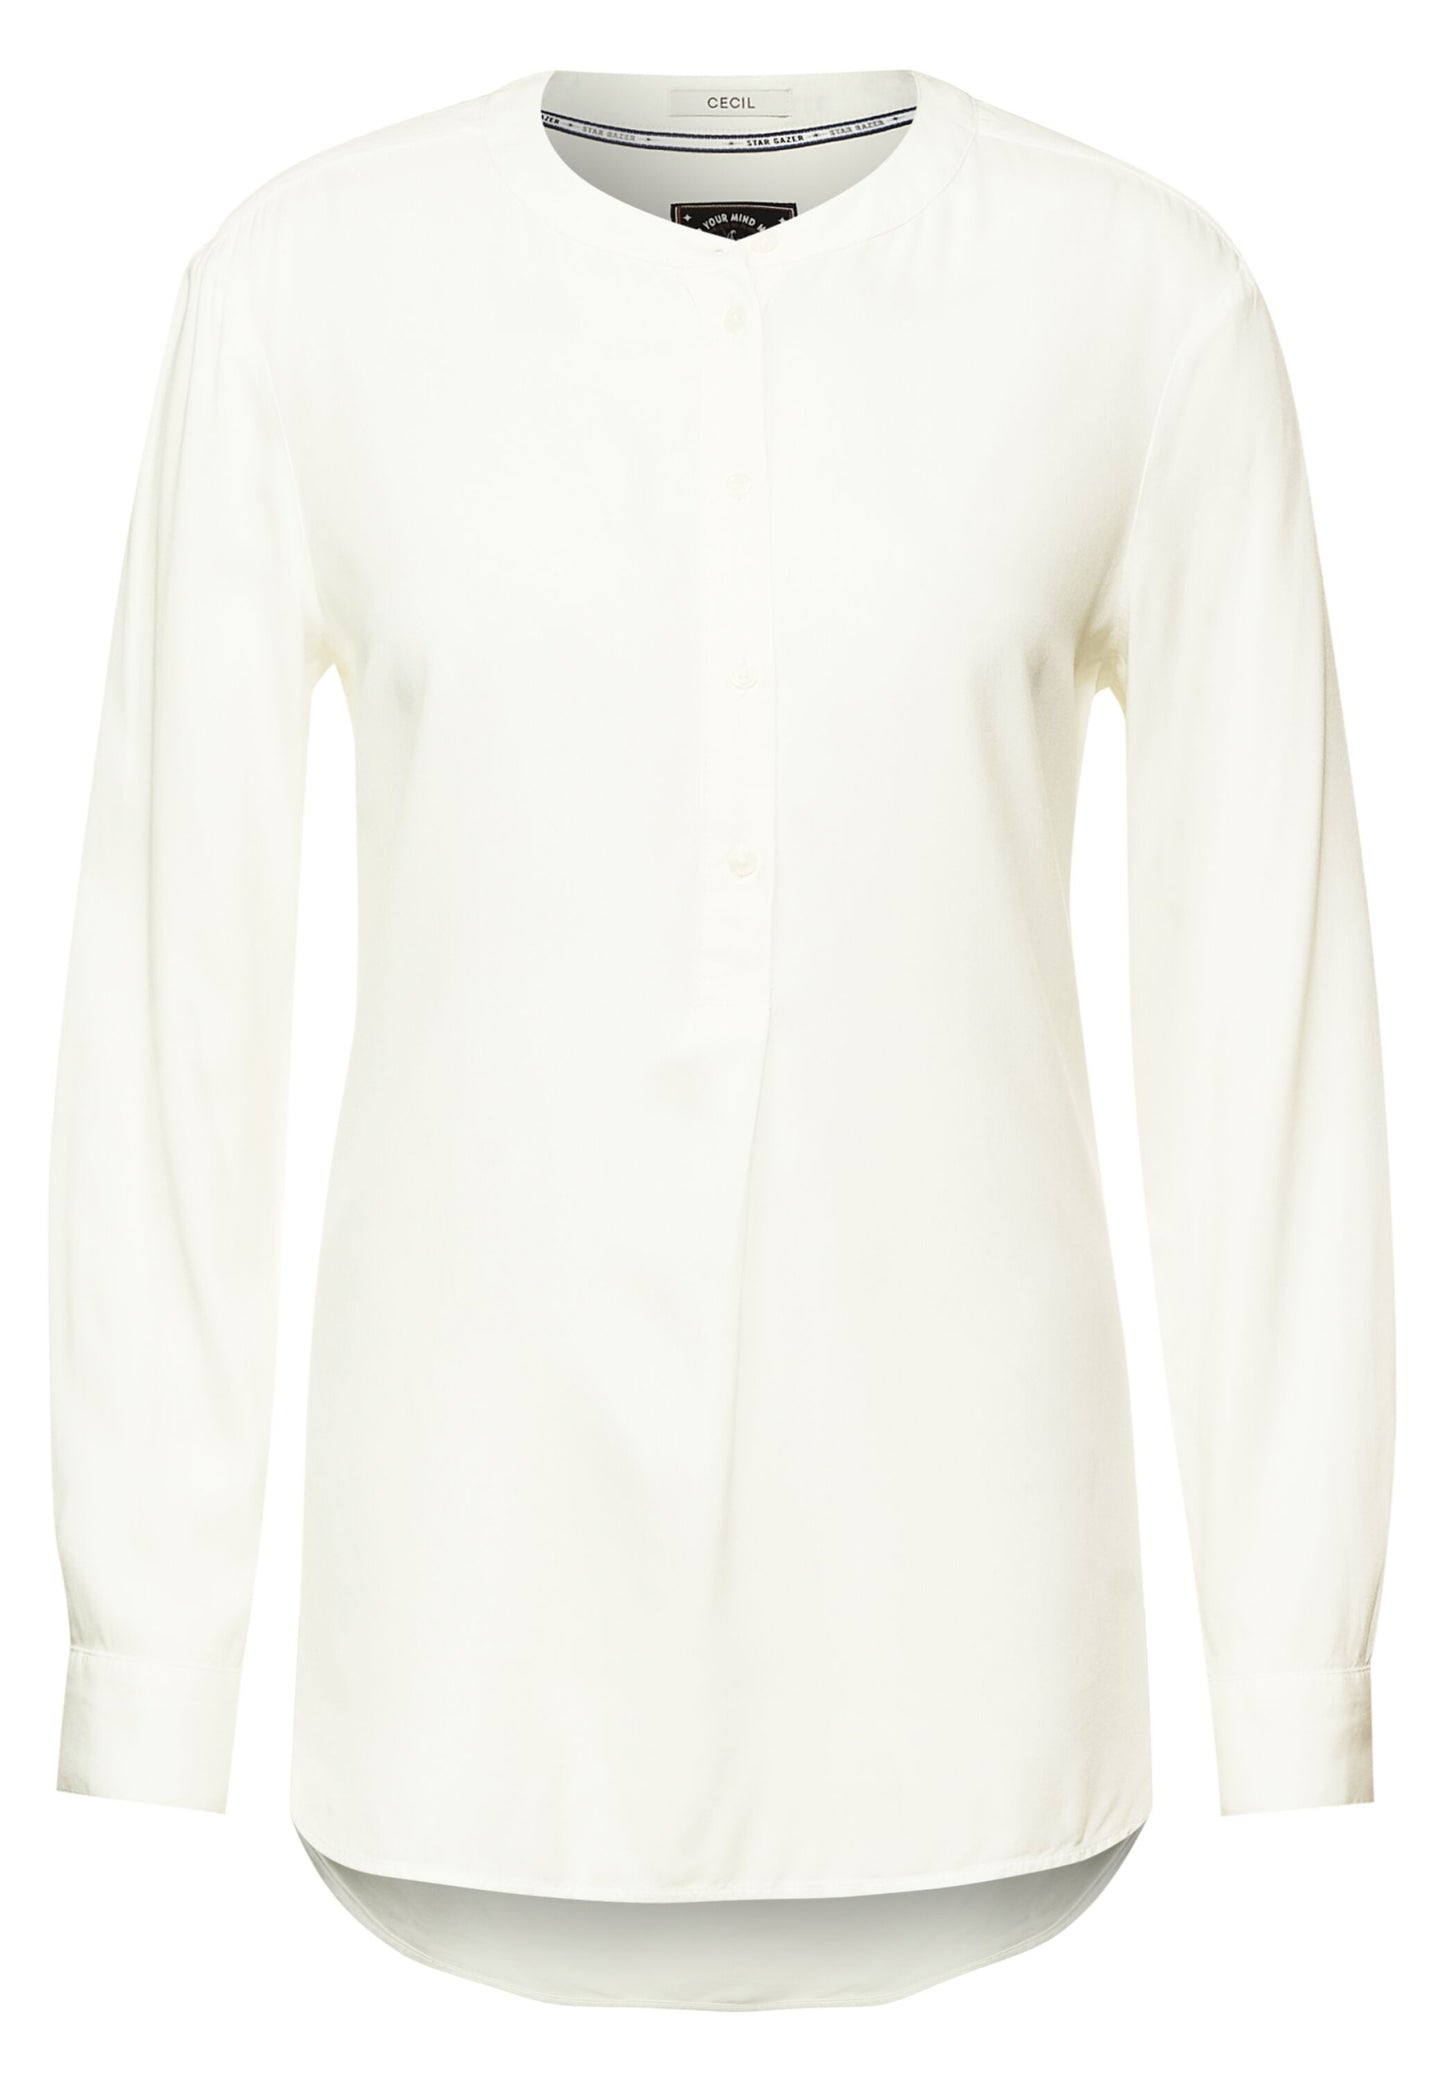 Long blouse in plain color